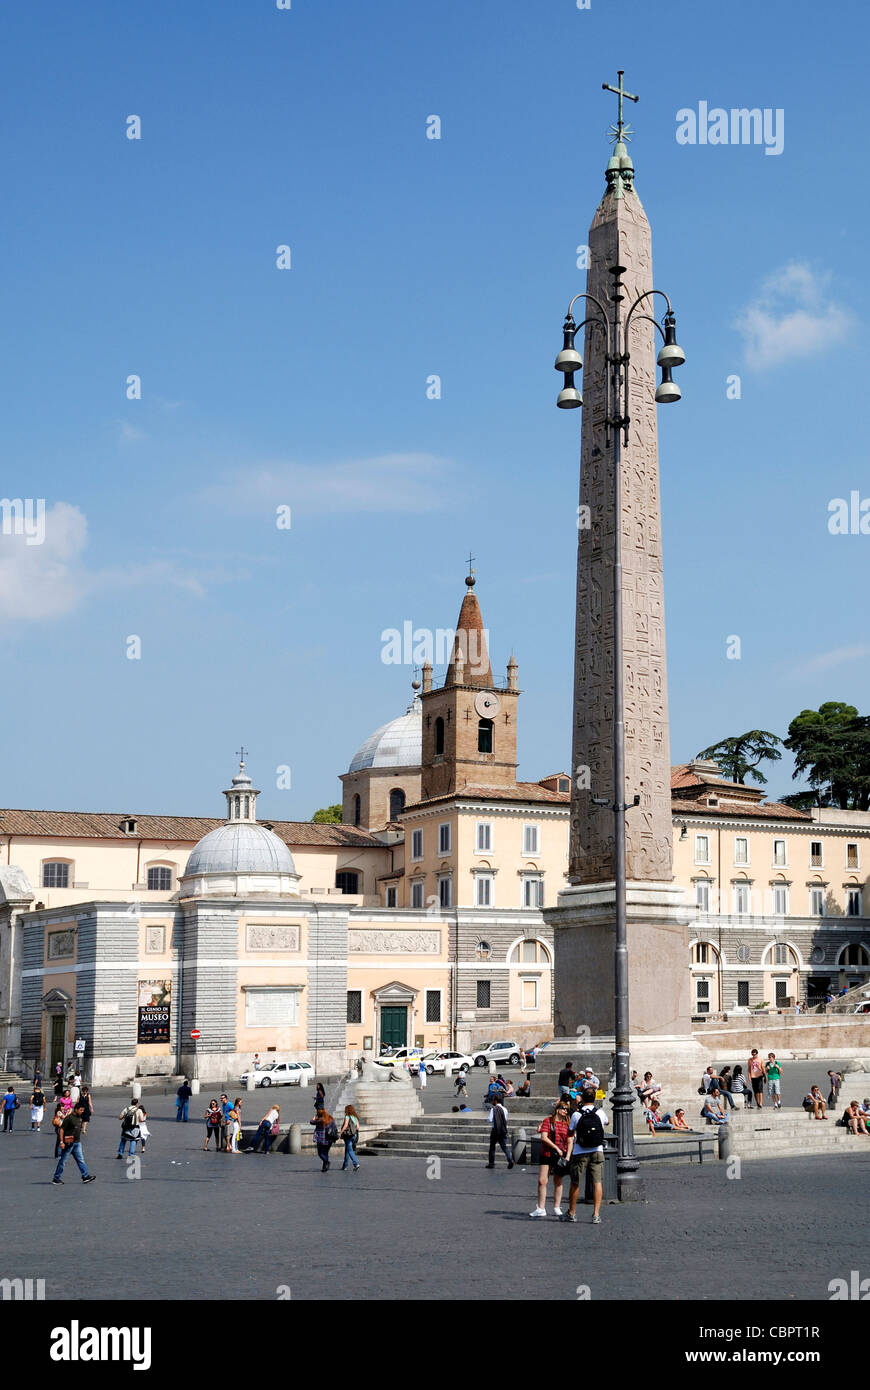 Piazza del Popolo en Roma con la iglesia de Santa Maria del Popolo y el Obelisco Flaminio. Foto de stock